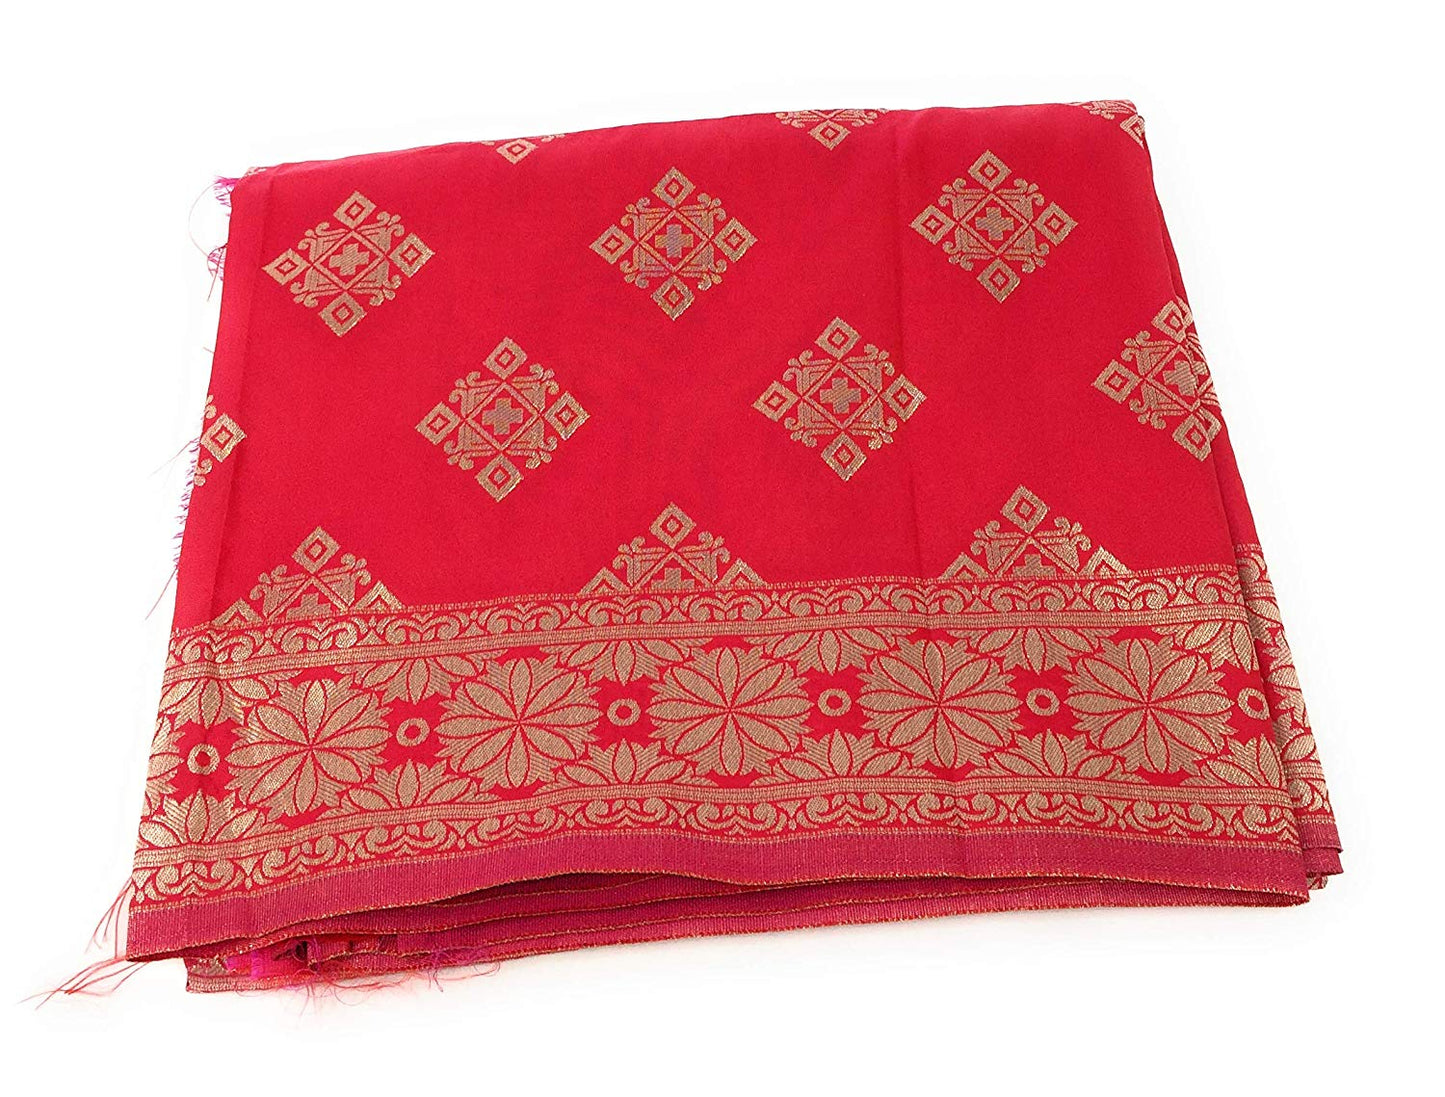 Banarasi Silk Dupatta in Red Pink Gold